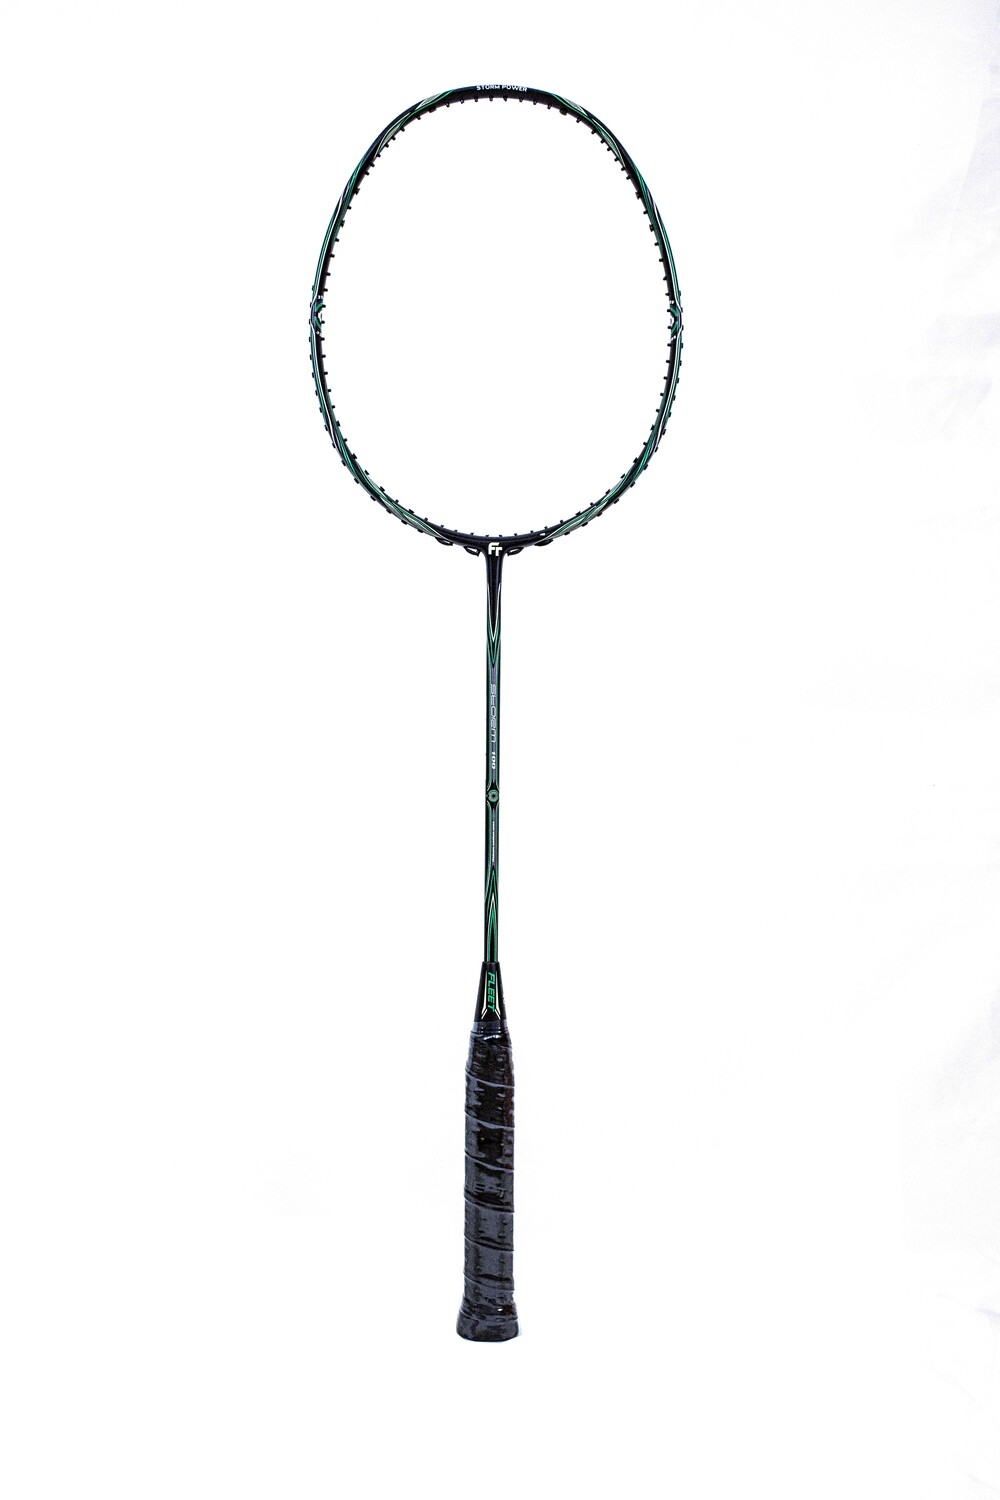 Fleet Storm 100 Black/Green Badminton Racquet